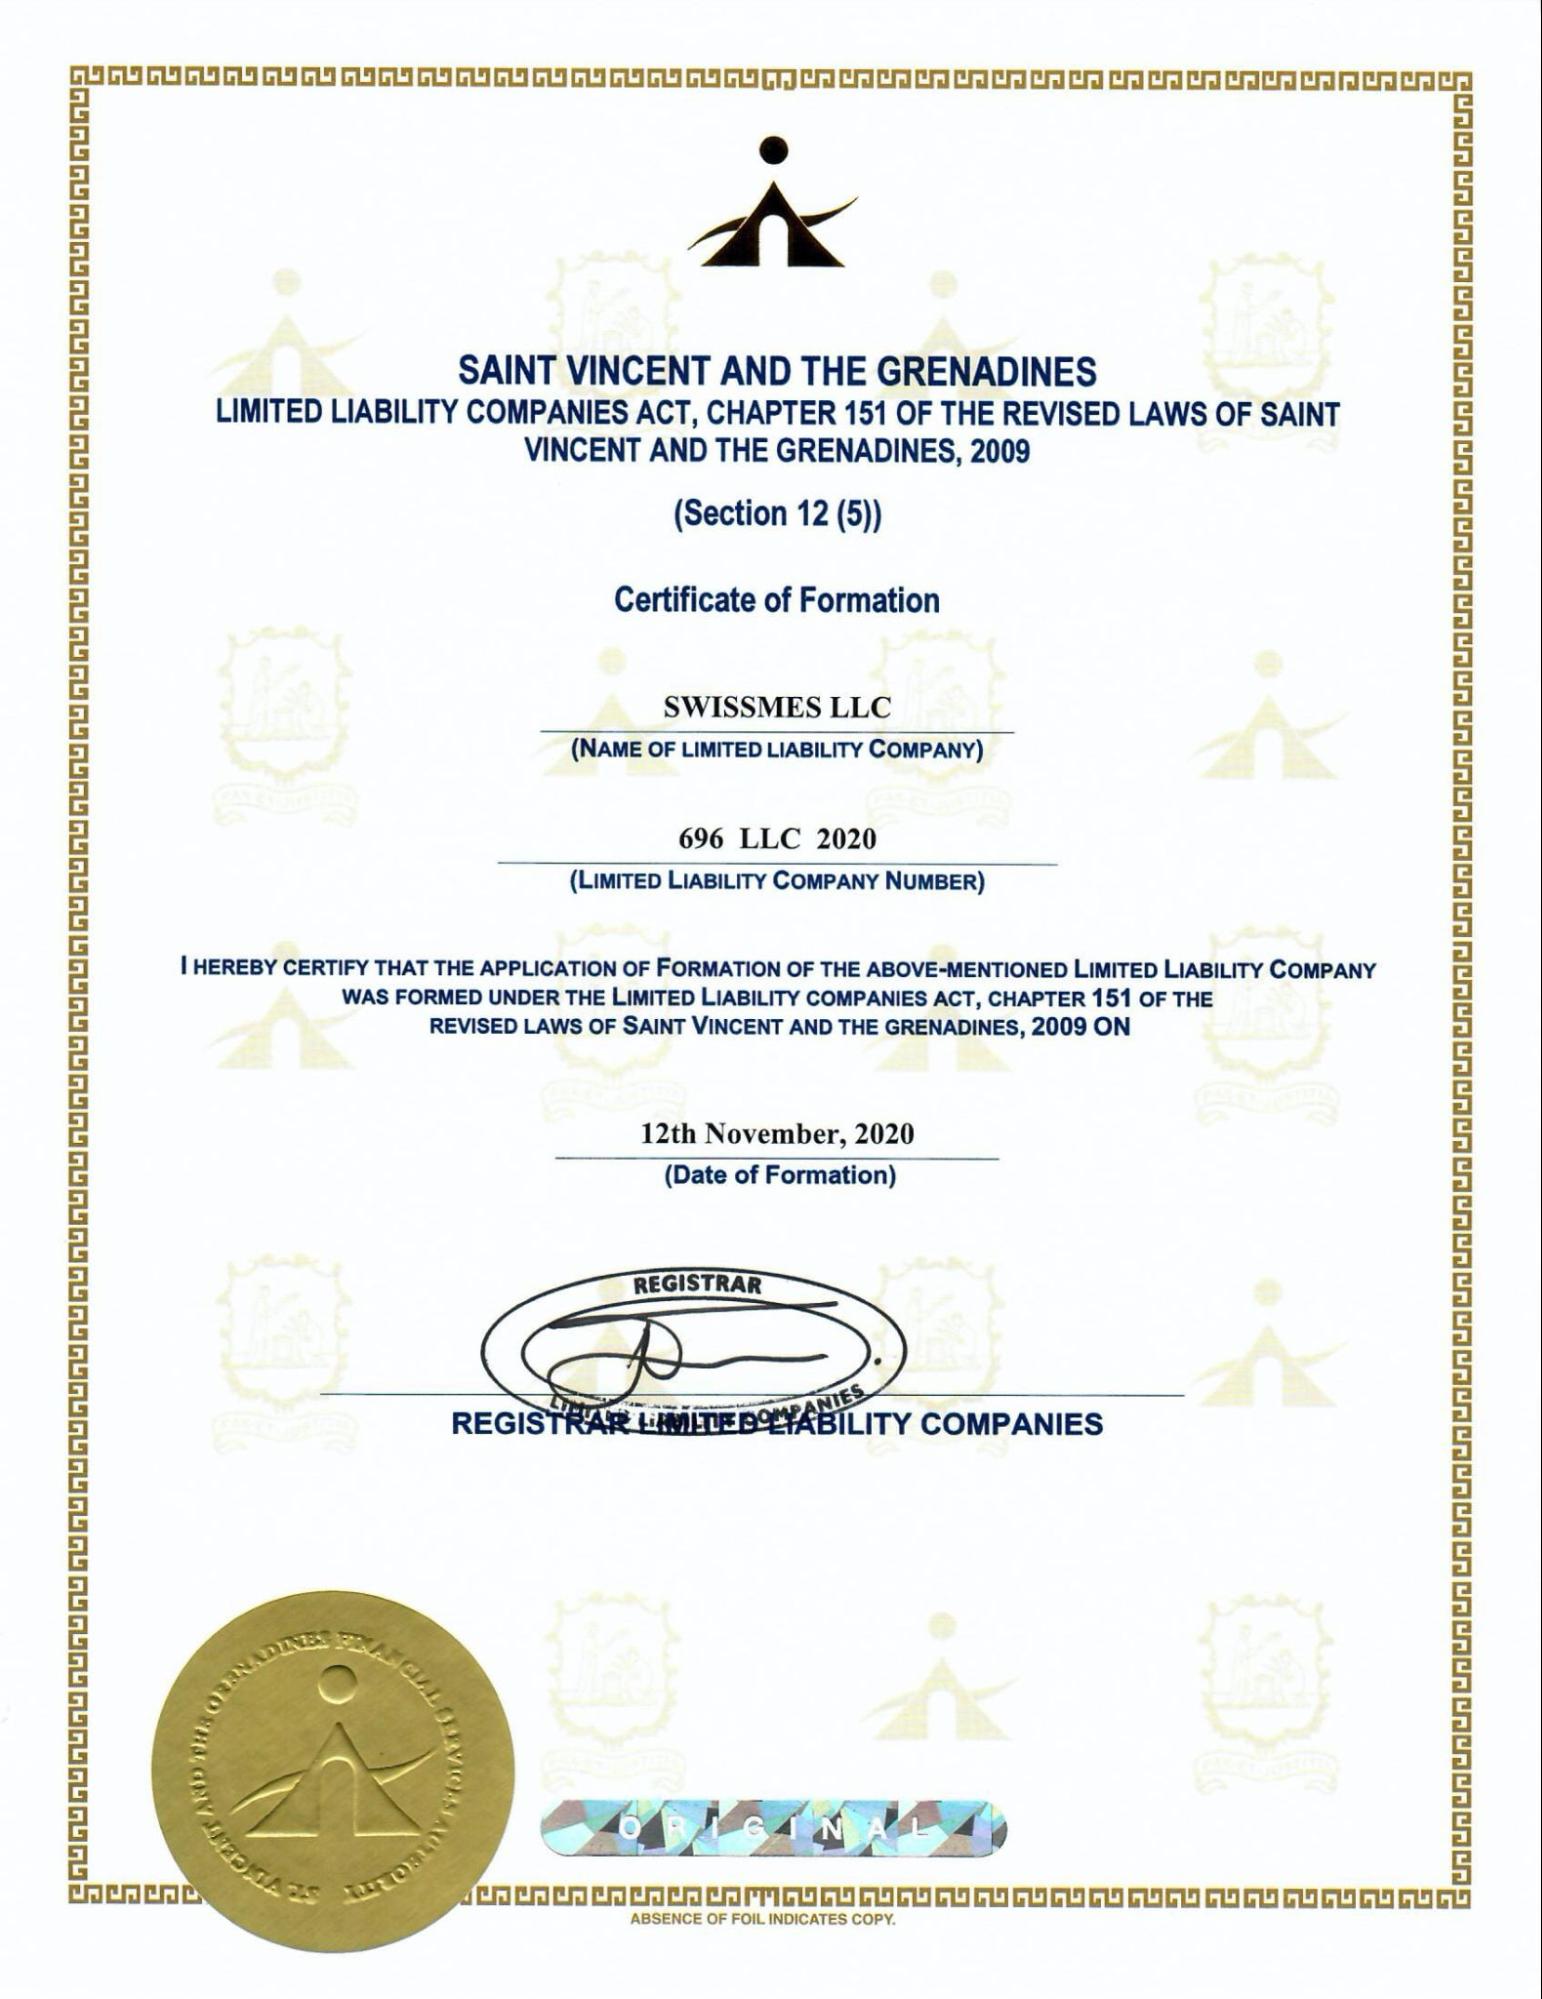 Sàn swissmes được cấp giấy phép hoạt động bởi Cơ quan Dịch vụ Tài chính SVG FSA